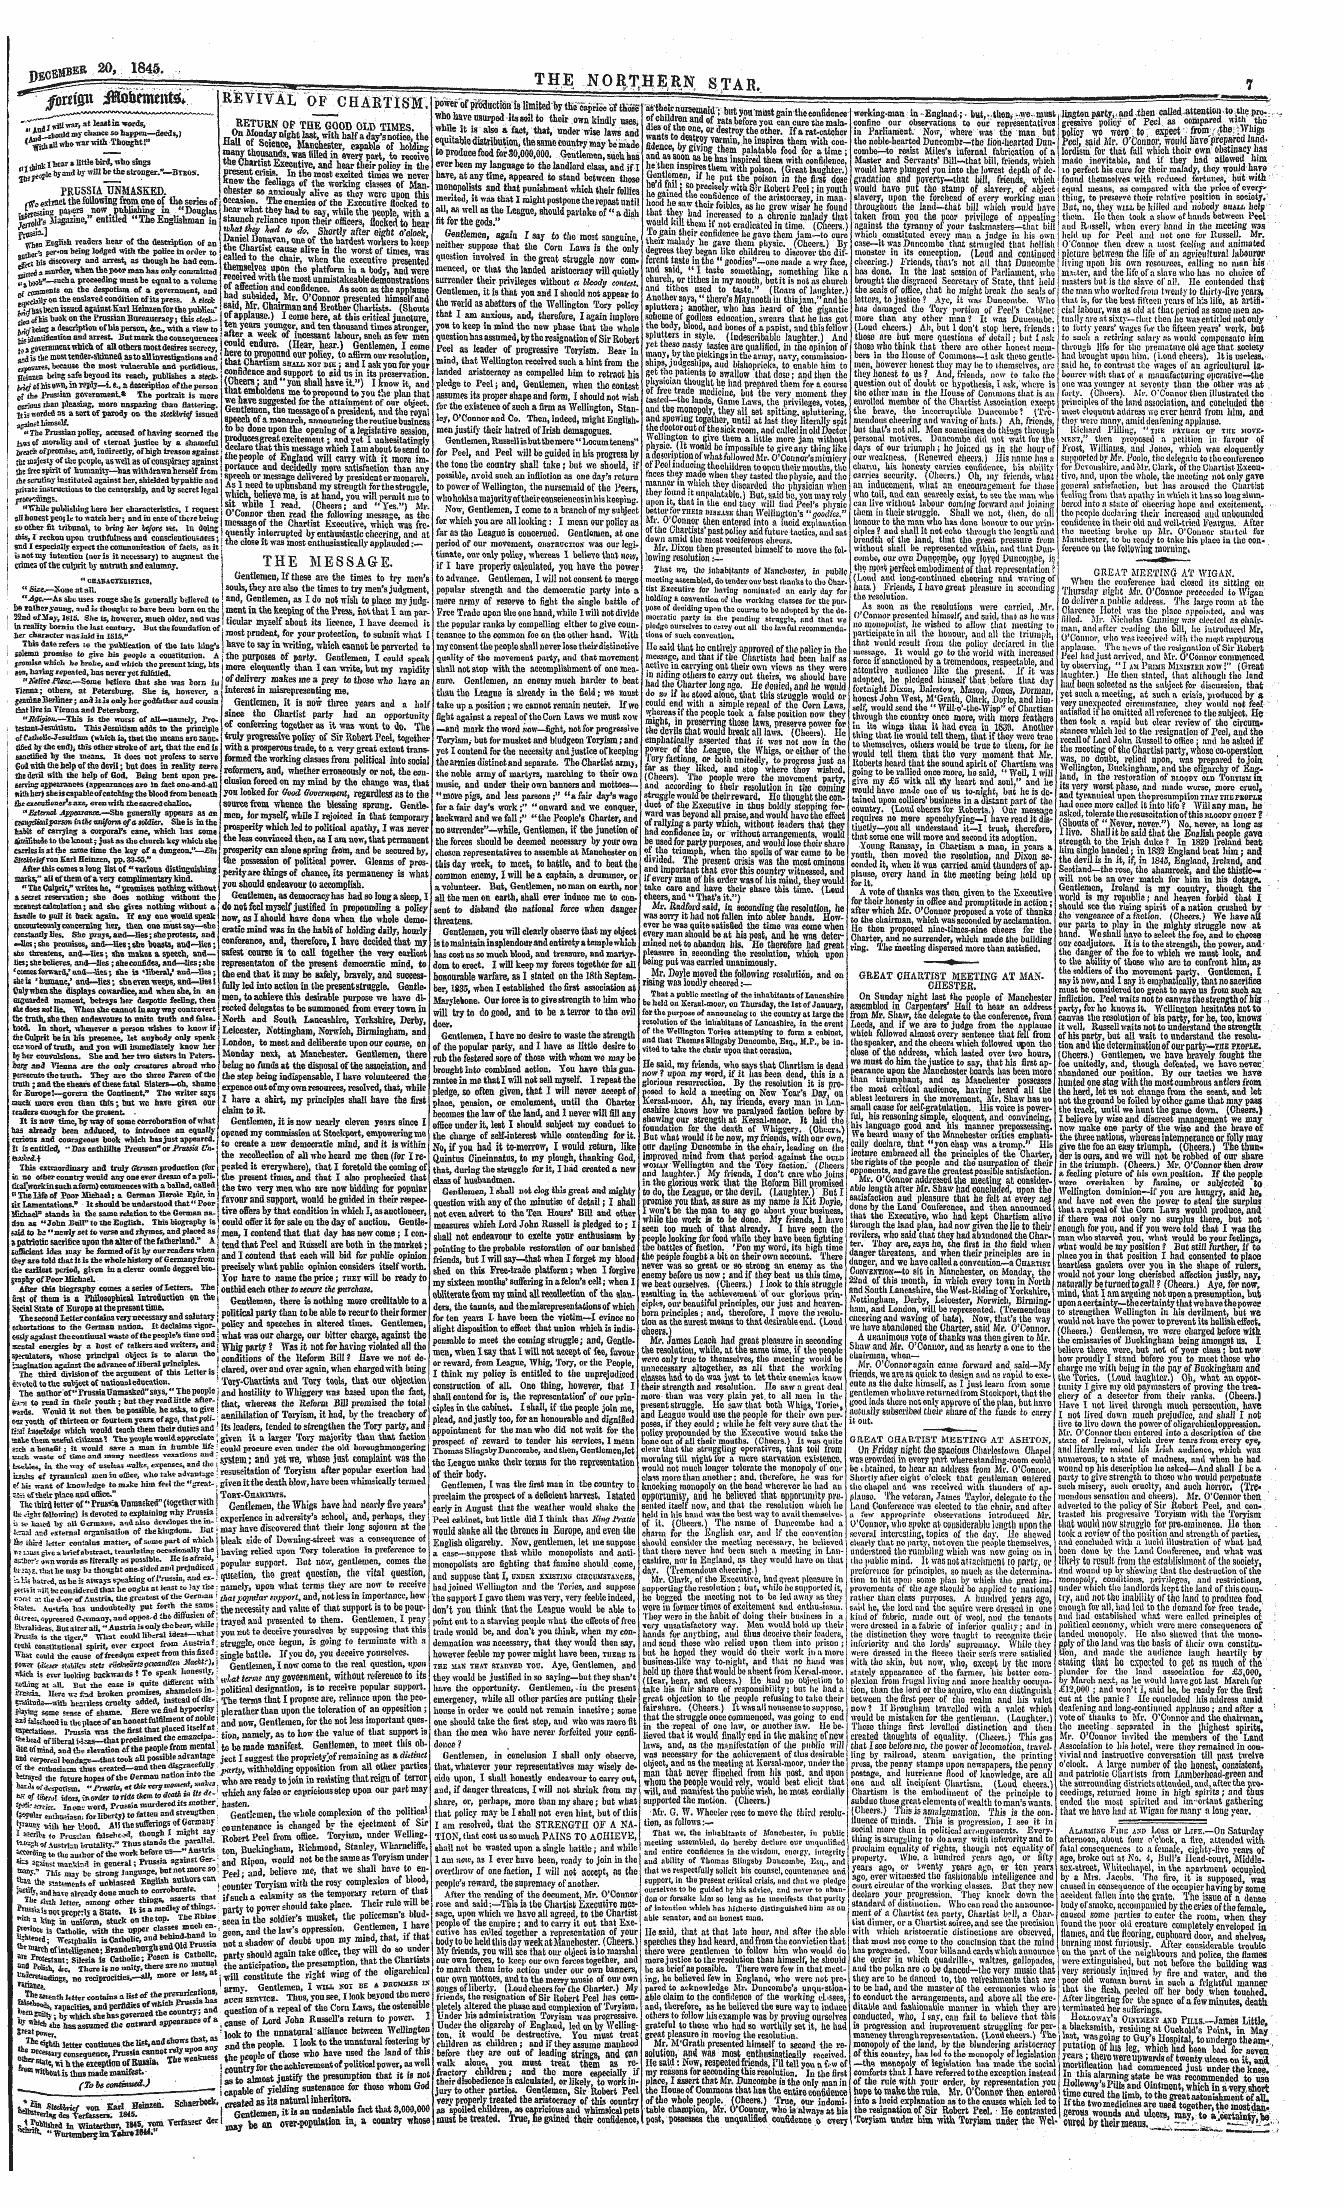 Northern Star (1837-1852): jS F Y, 4th edition - Alarmixg Fiiik A.Ni> Loss Or Life.—On Sa...